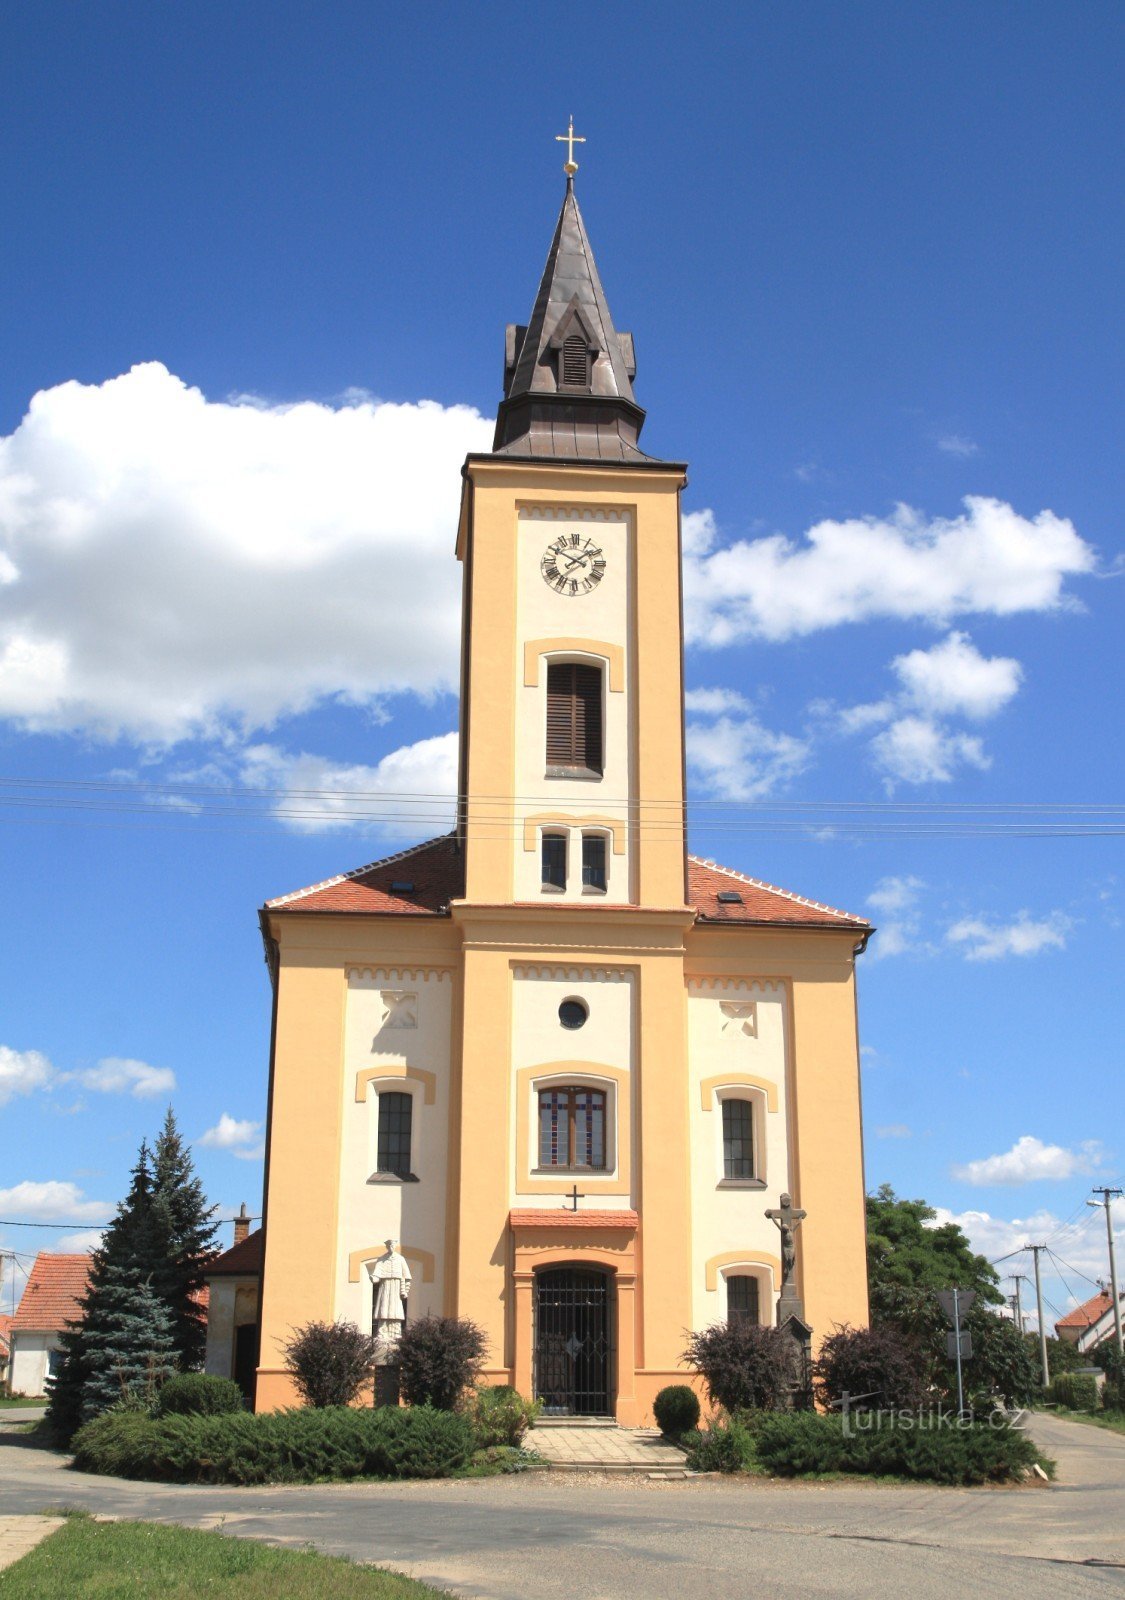 Opatovice - Pyhän Nikolauksen kirkko. John Borromeo